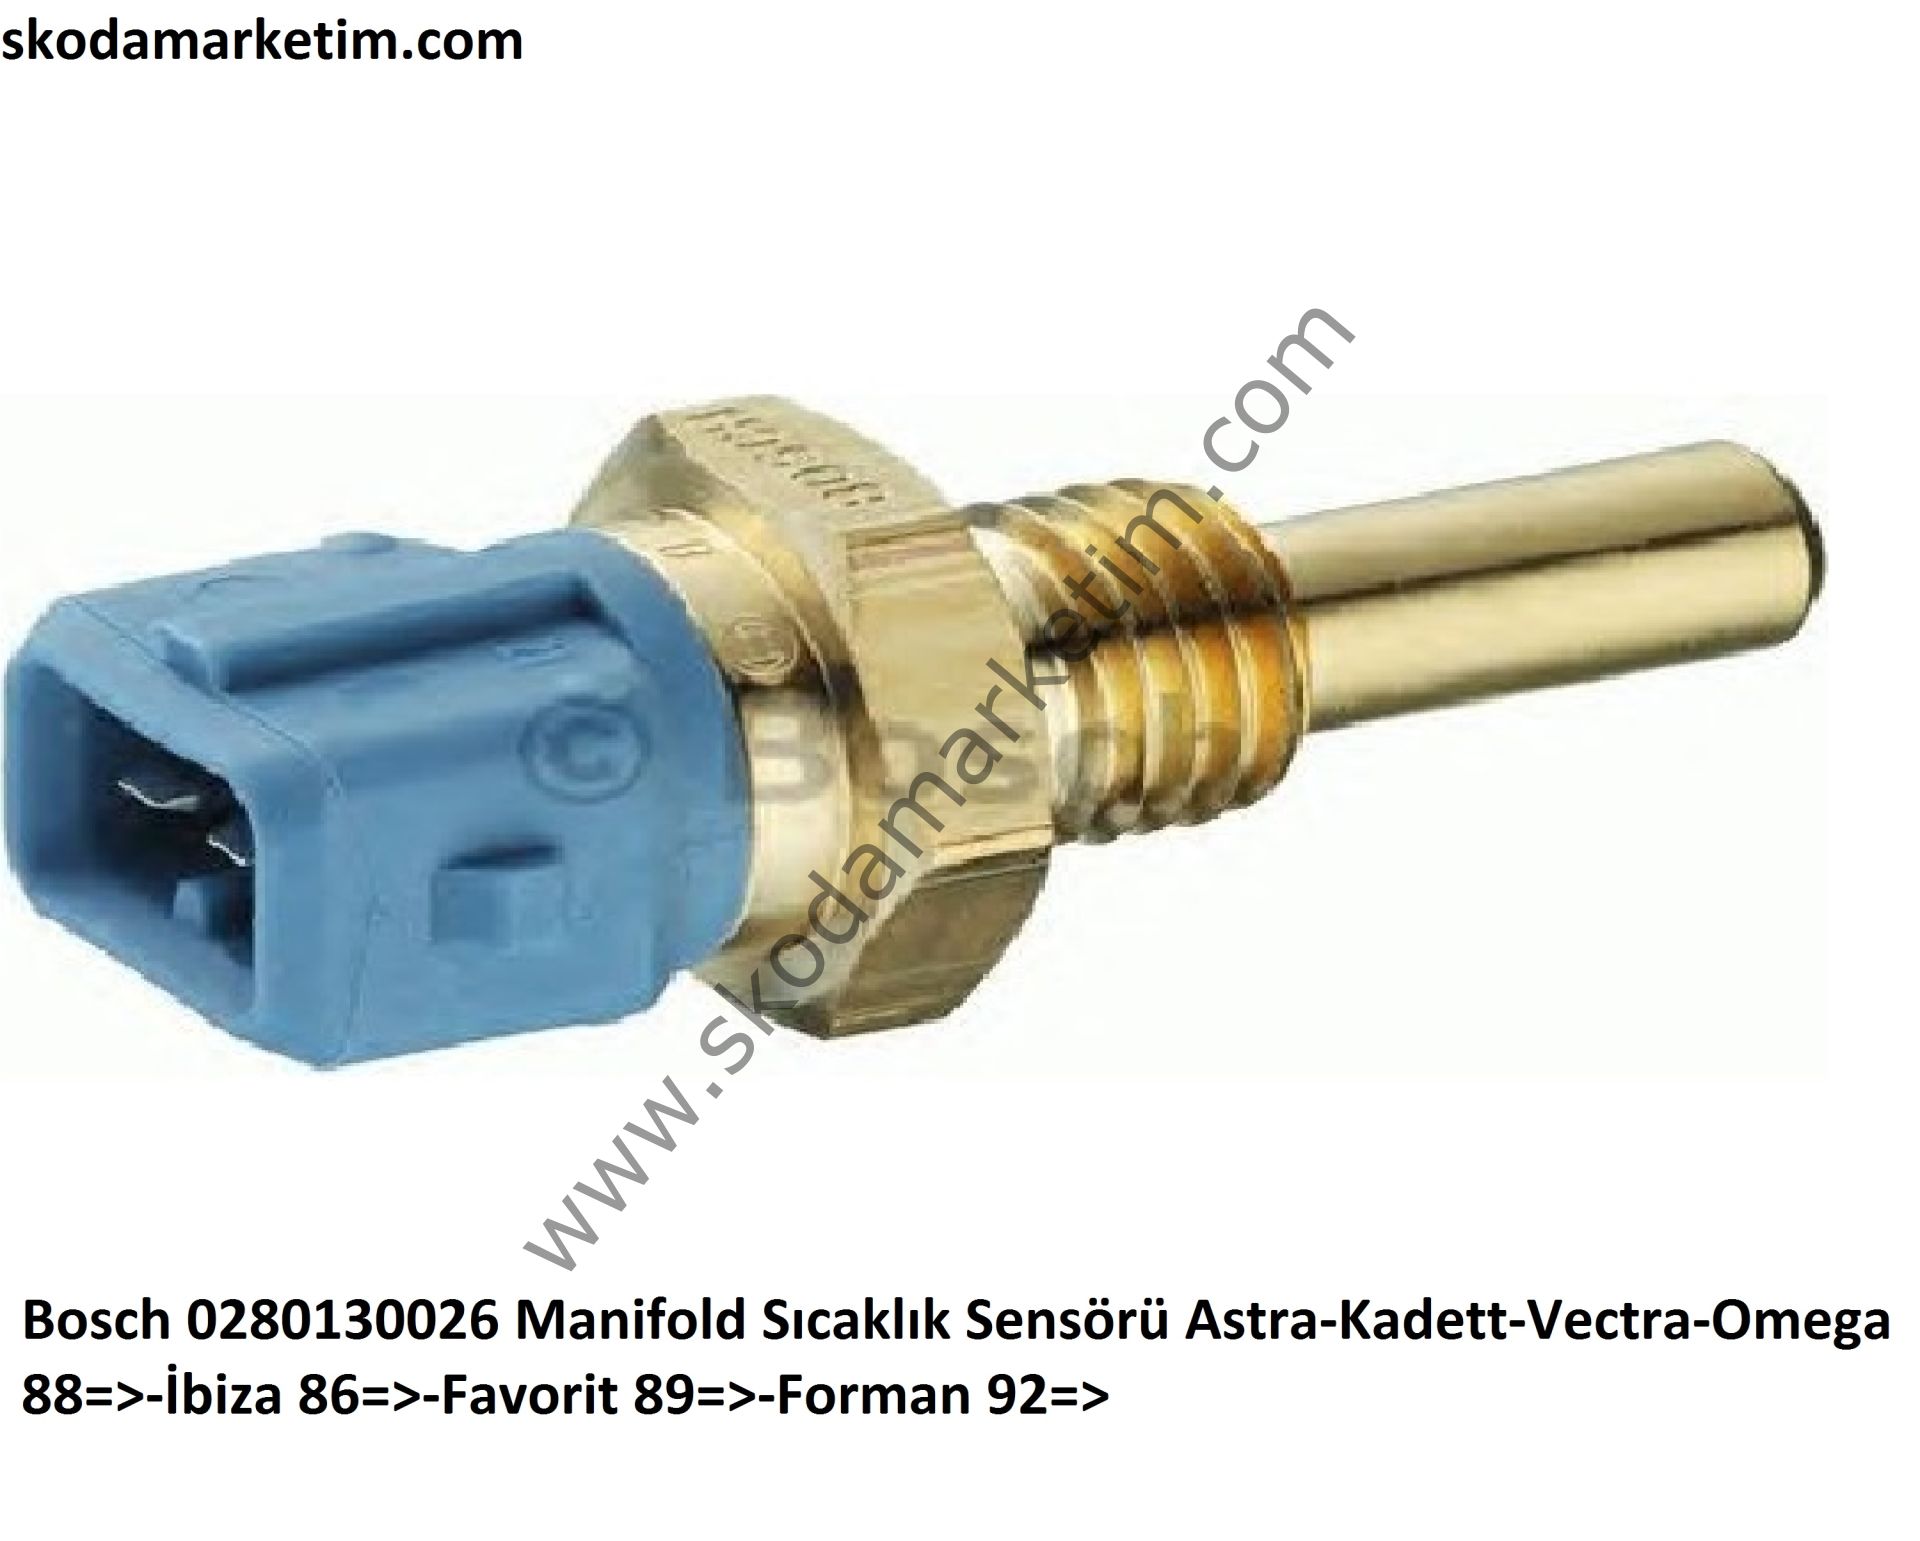 Bosch 0280130026 Manifold Sıcaklık Sensörü Astra-Kadett-Vectra-Omega 88=>-İbiza 86=>-Favorit 89=>-Forman 92=>